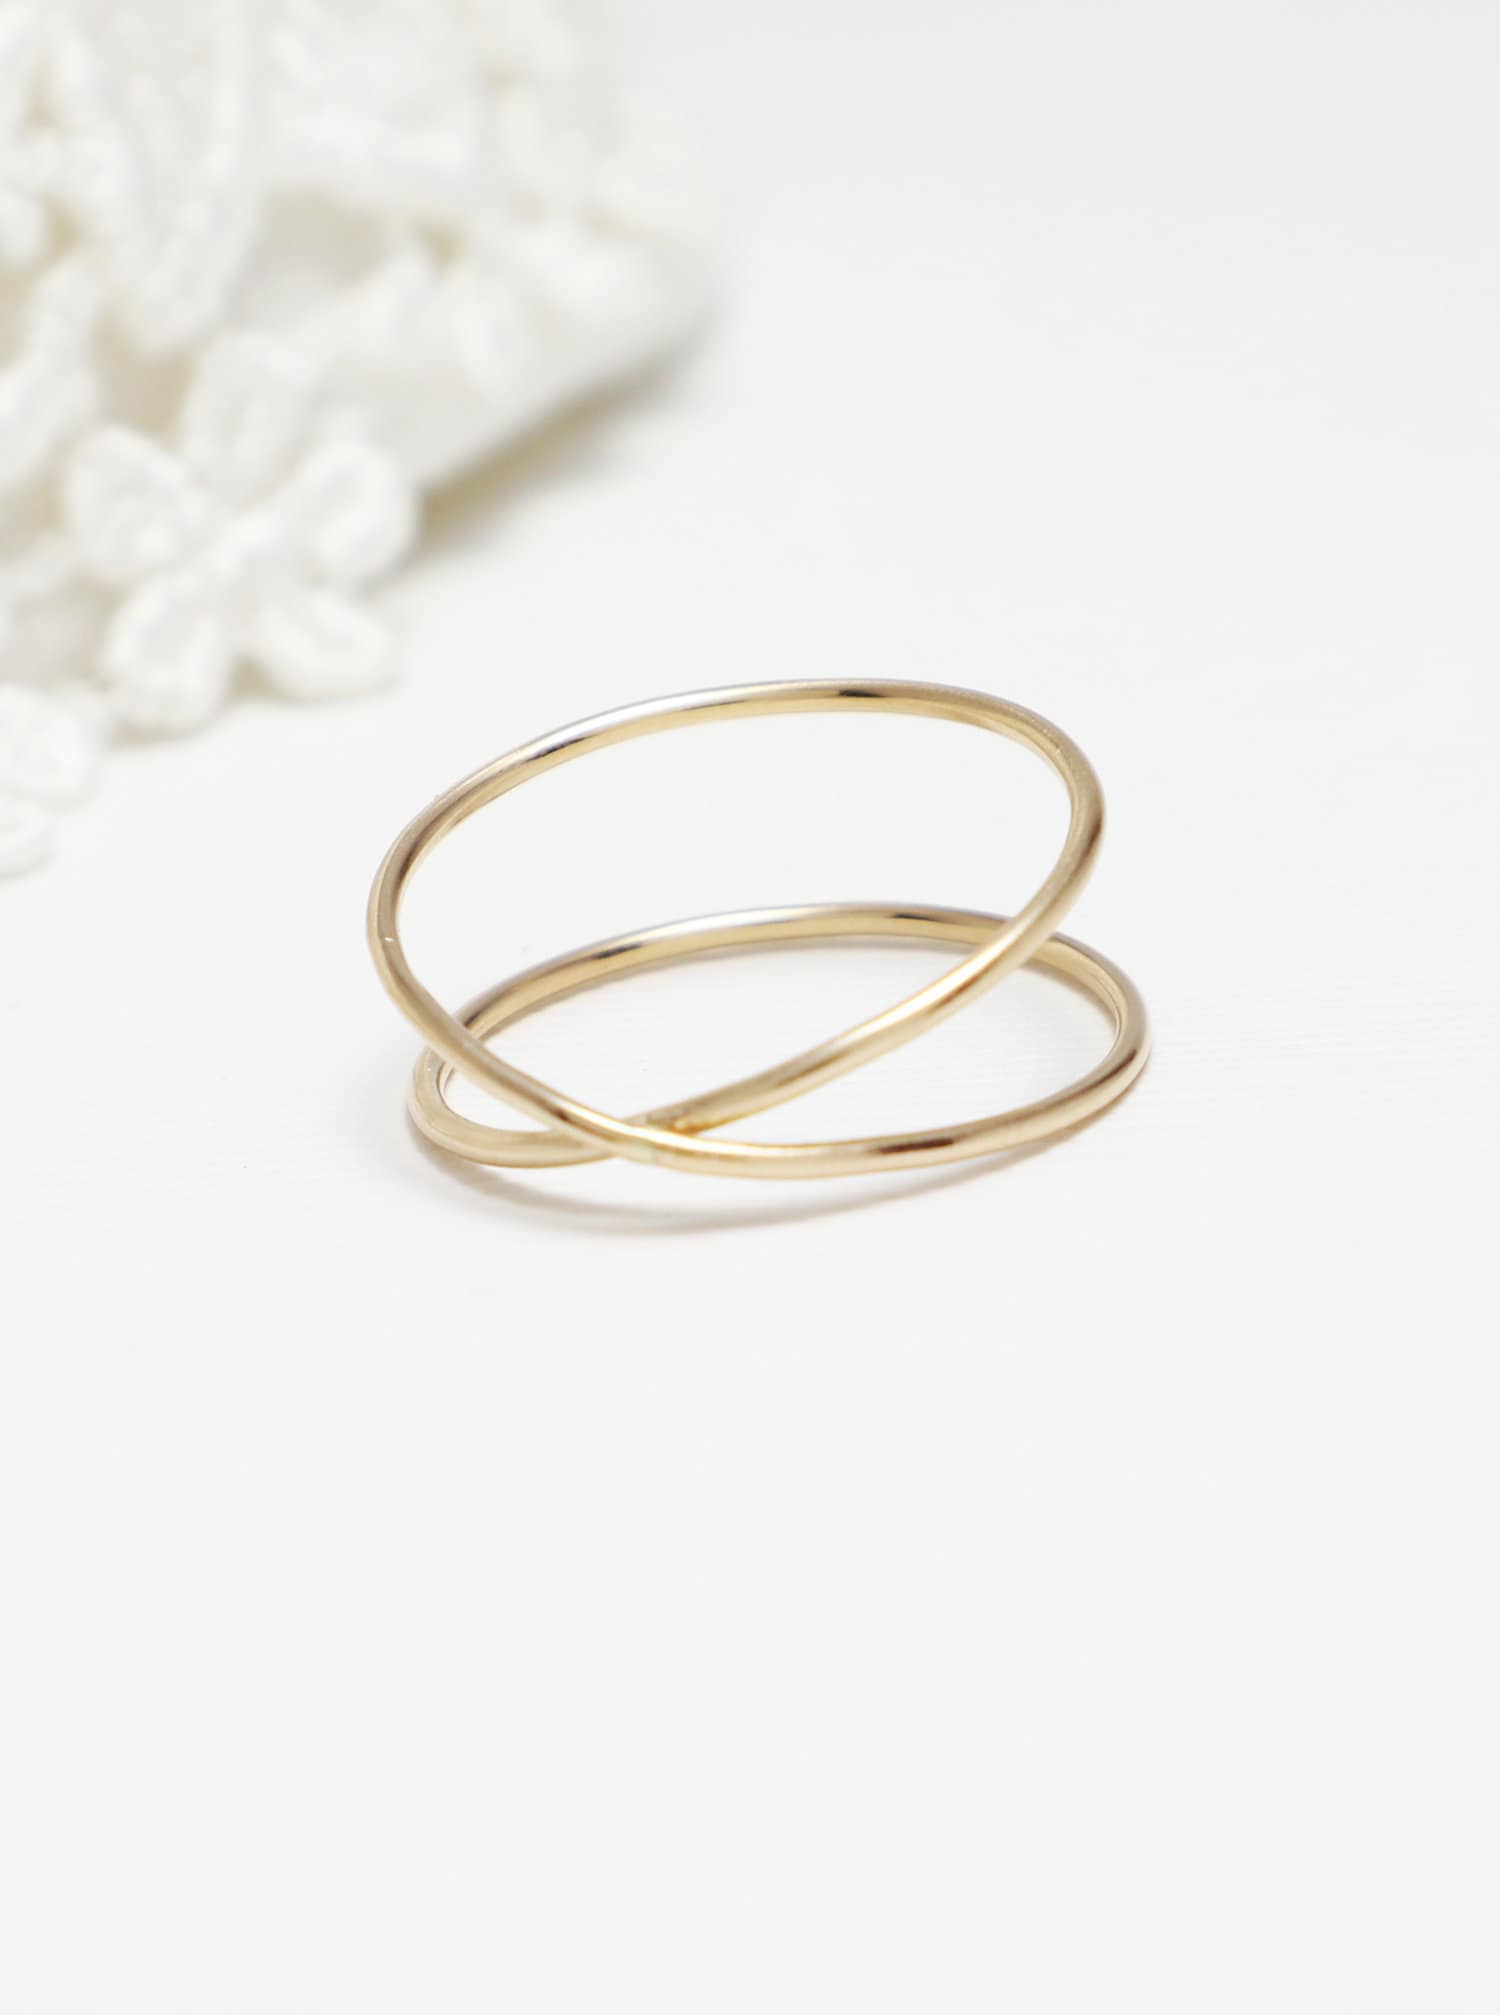 Daumenring, Ring Für Frauen, Schlichter Goldring, Goldener Kreuzring, Ringe Frauen | Lovex von IrresistiblyMinimal